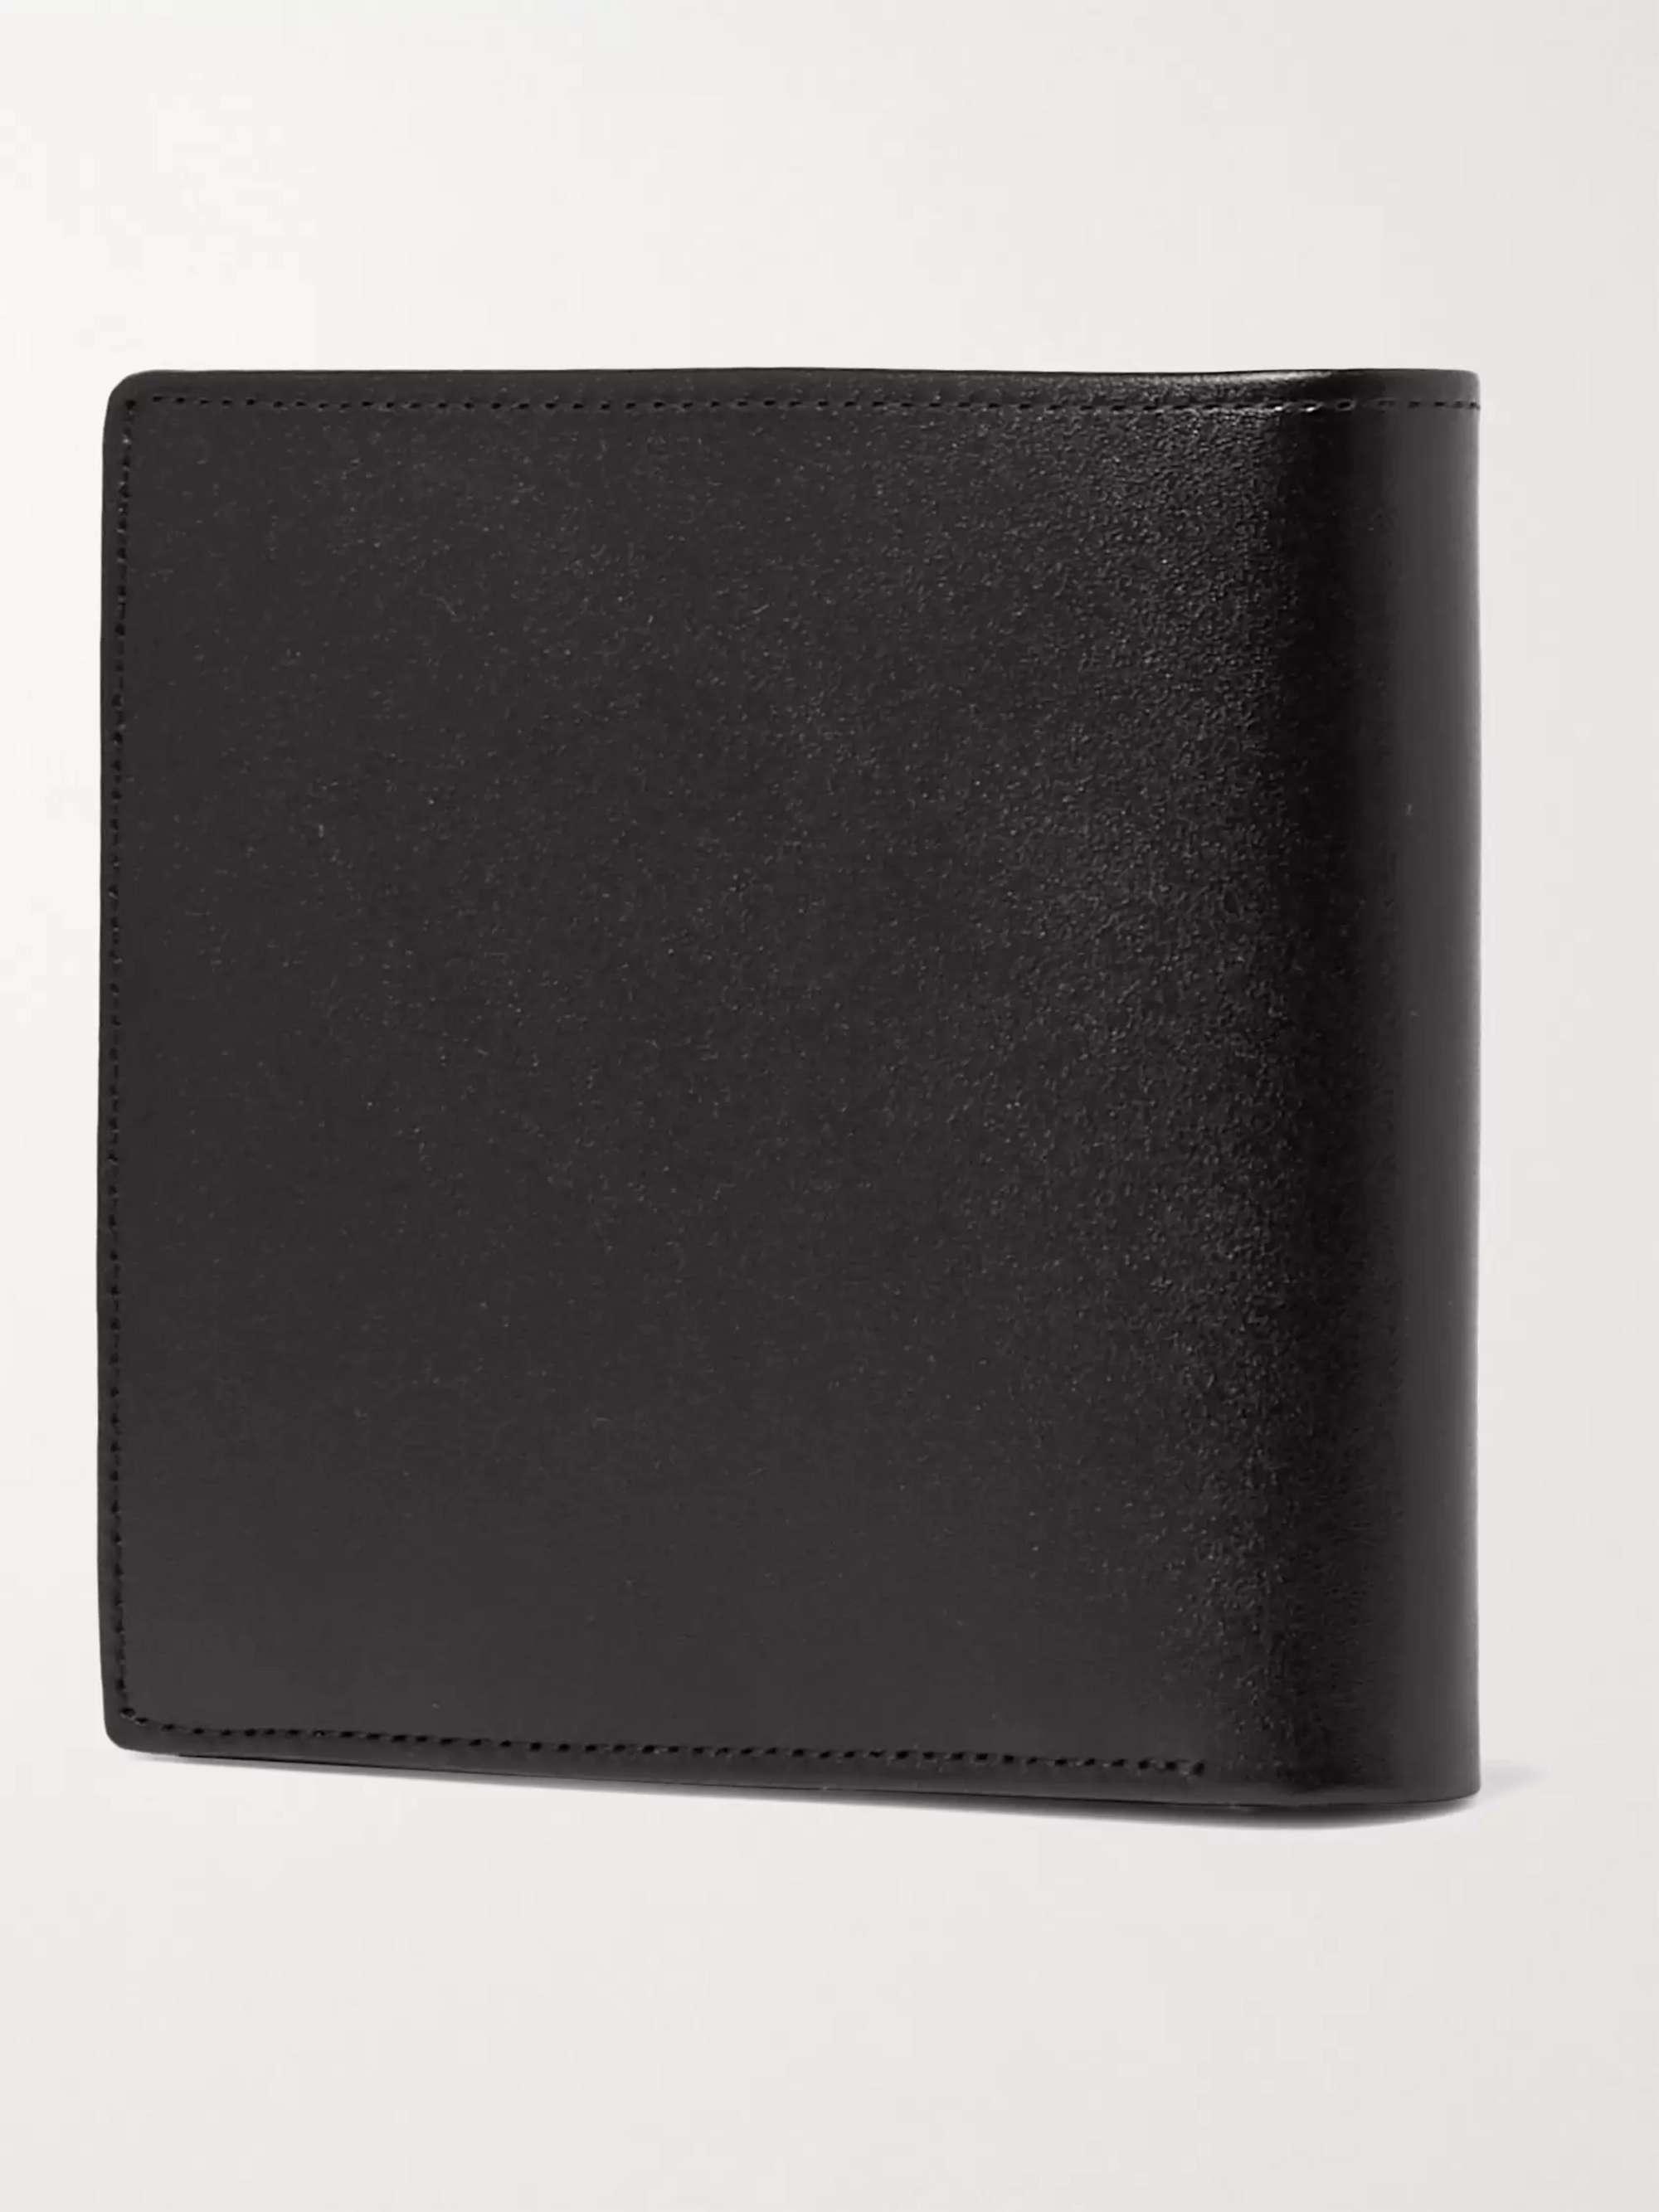 MONTBLANC Meisterstück Leather Billfold Wallet